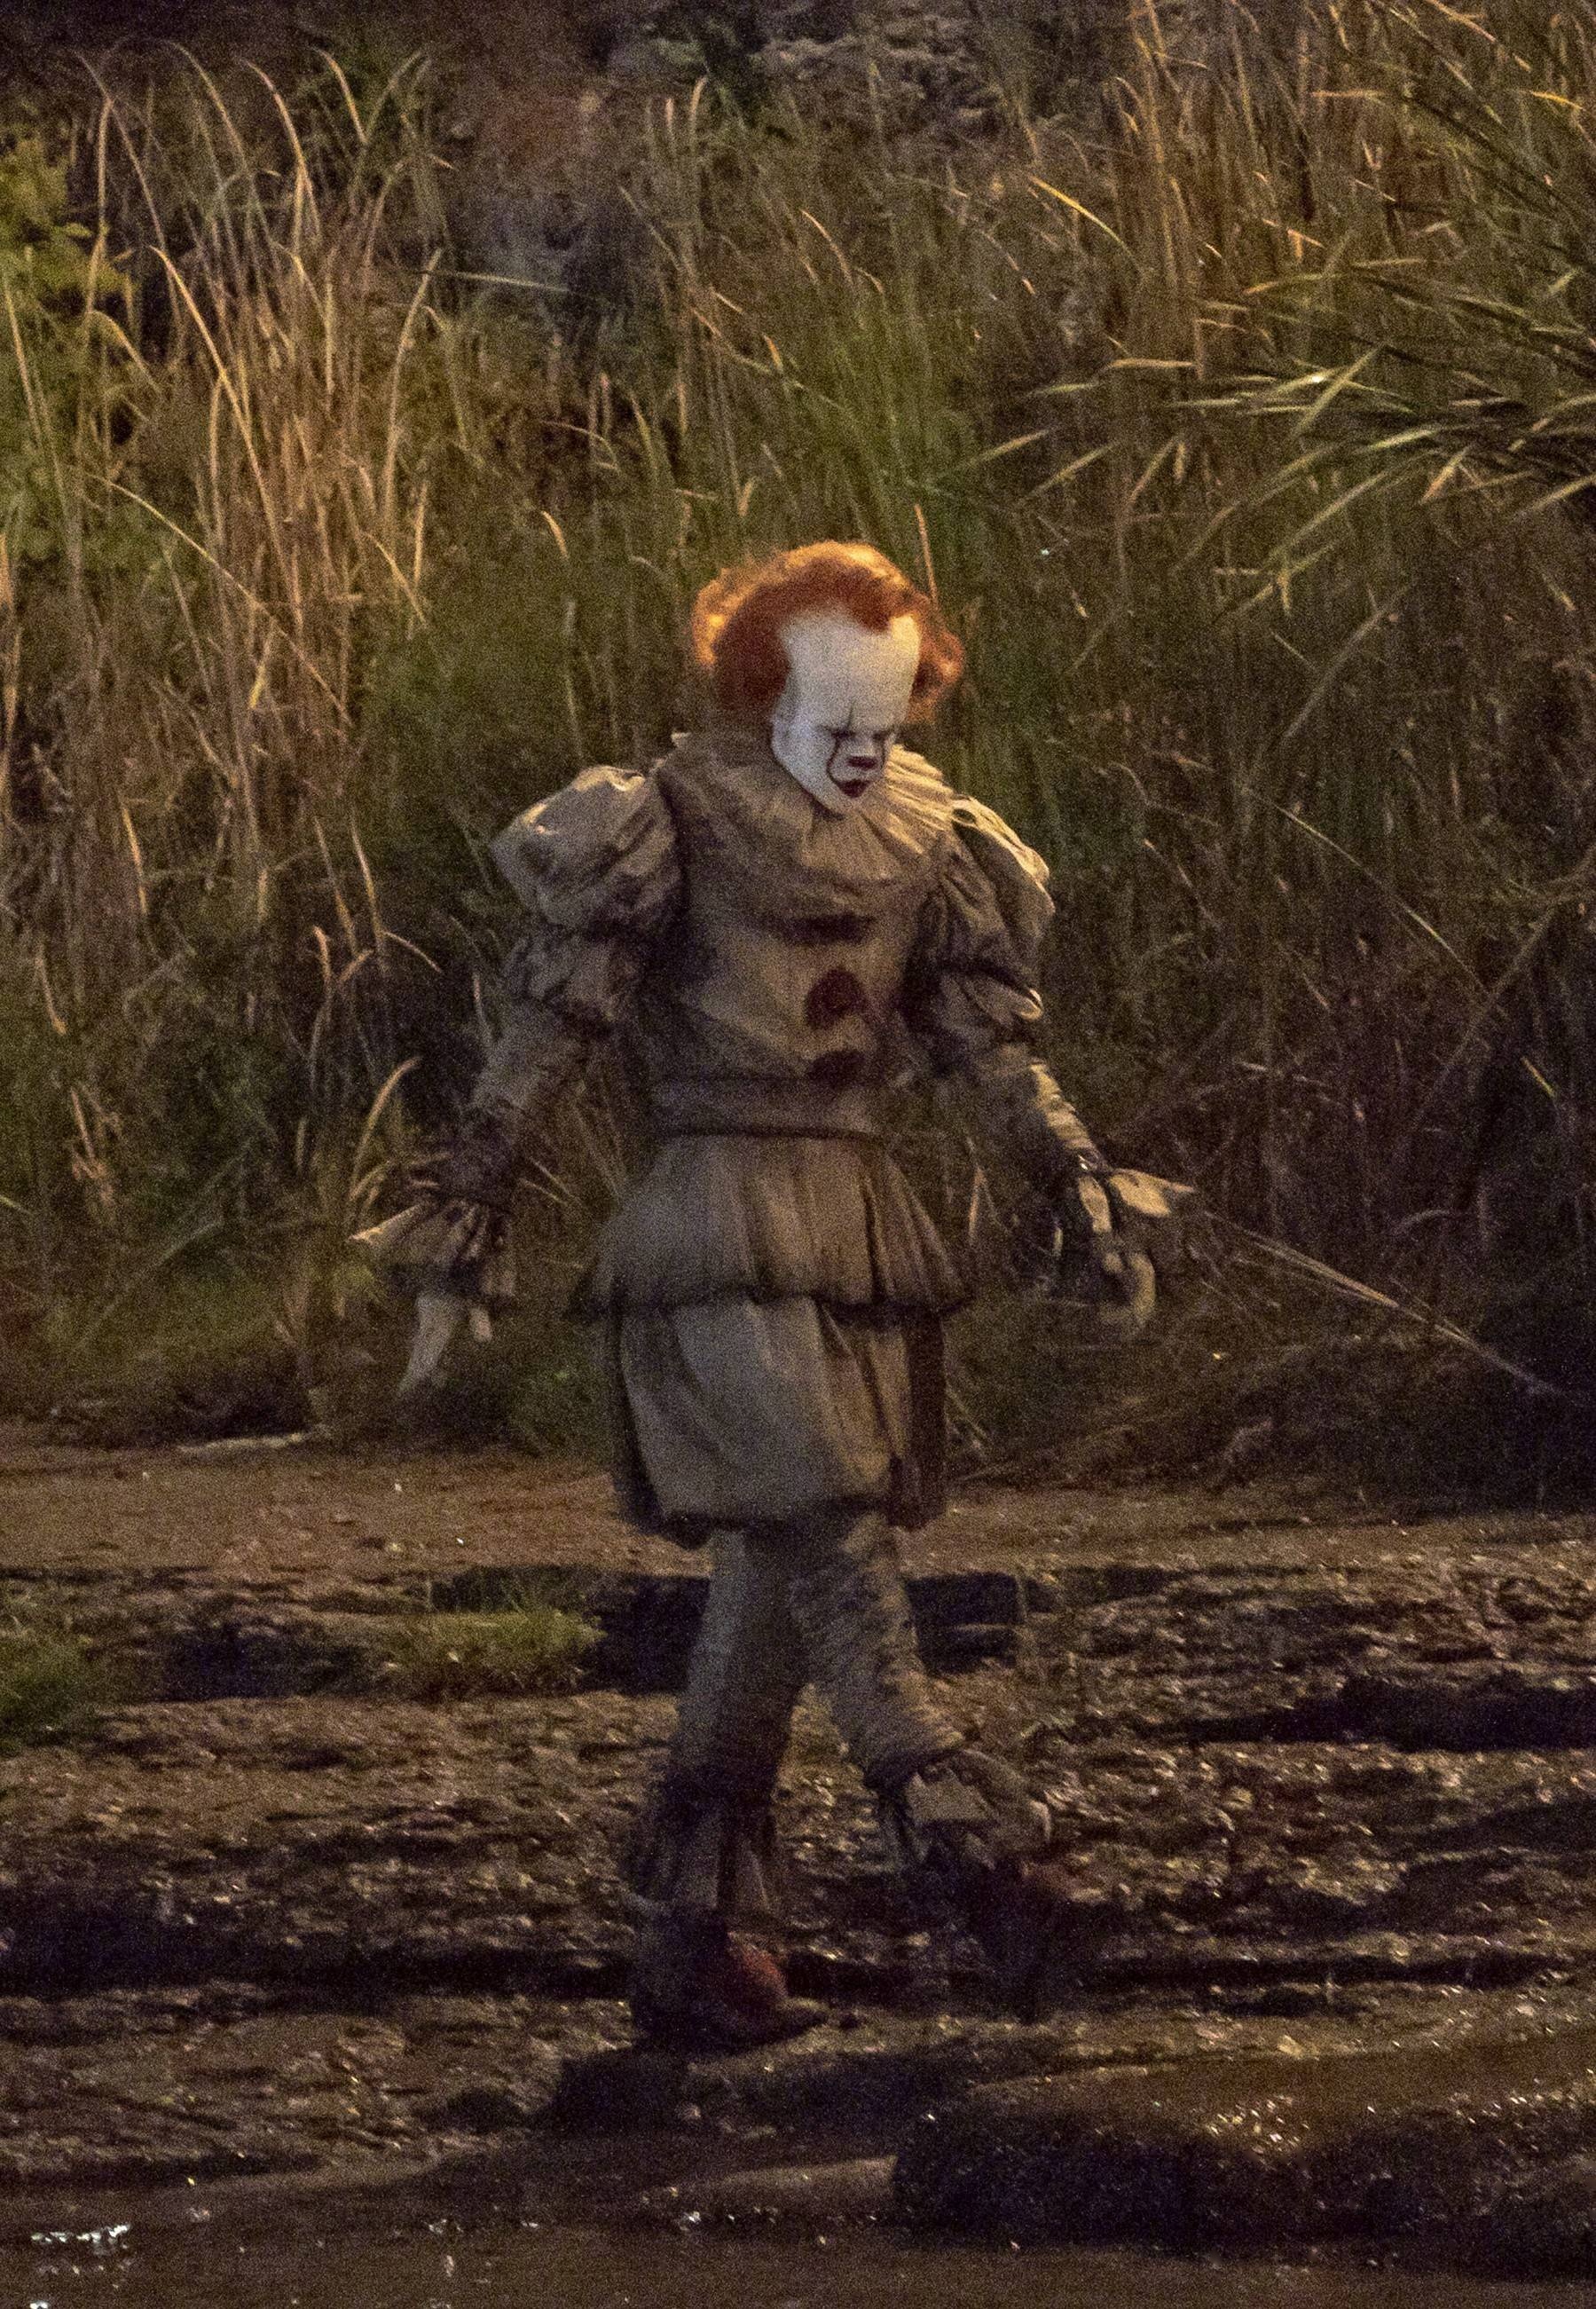 《小丑回魂2》曝光一组片场照,比尔·斯卡斯加德仿佛穿了一身塑料袋